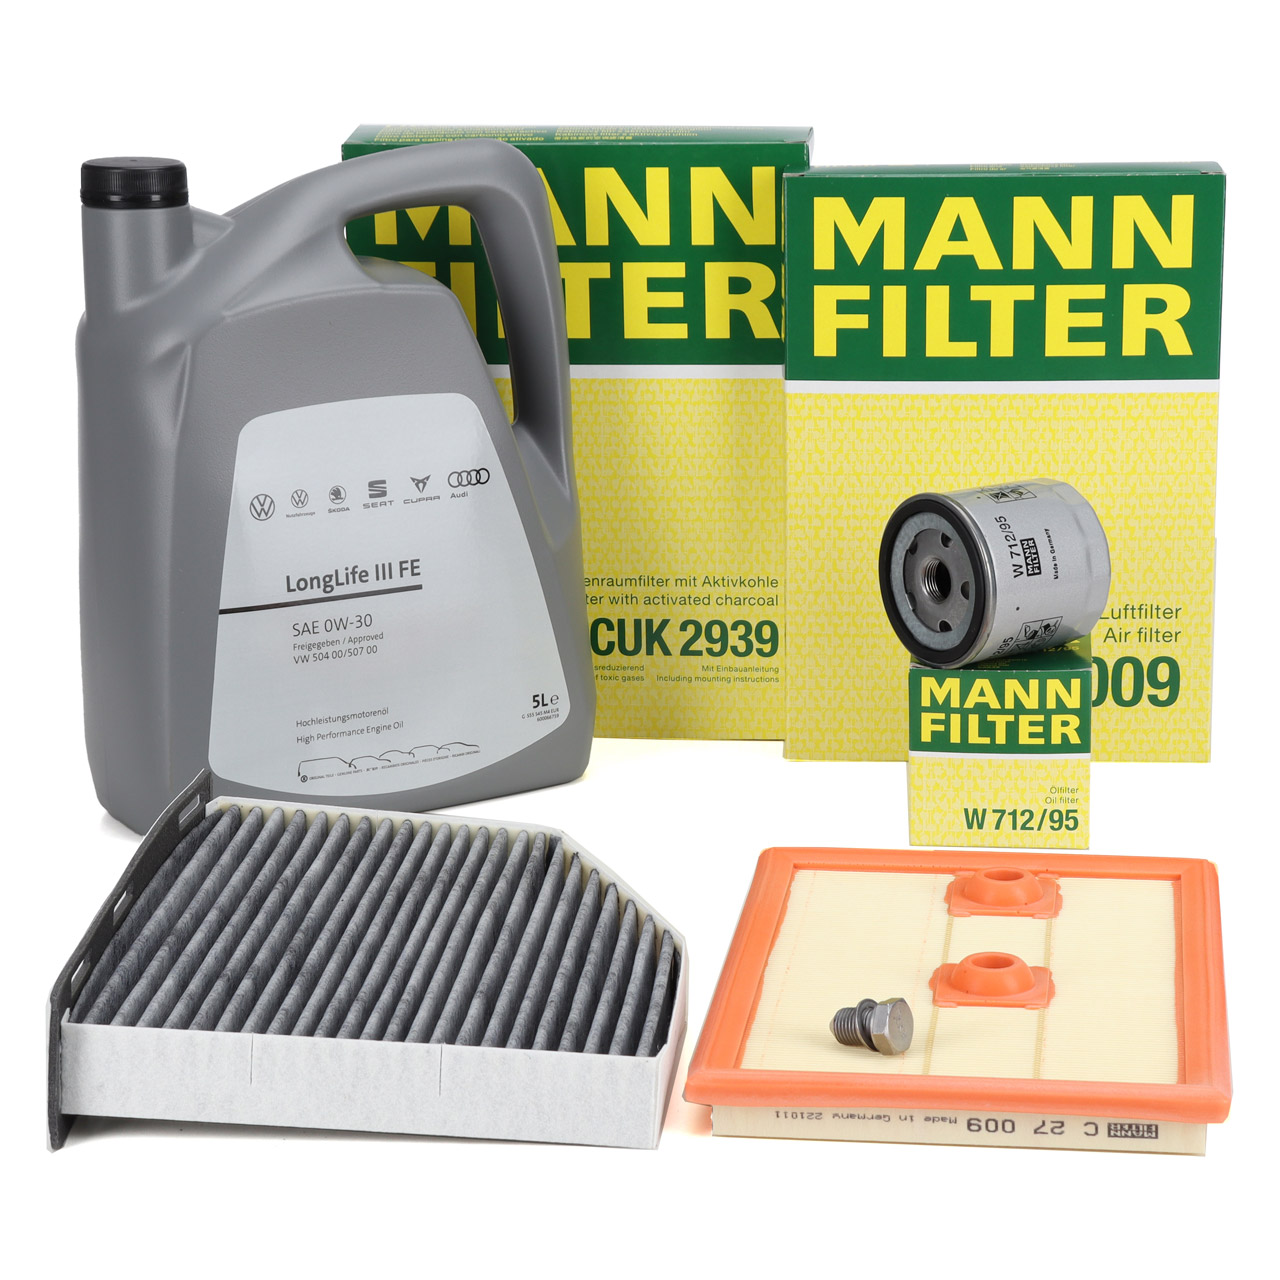 MANN-FILTER Wartungspakete / große Inspektion - CUK 2939, C 27 009